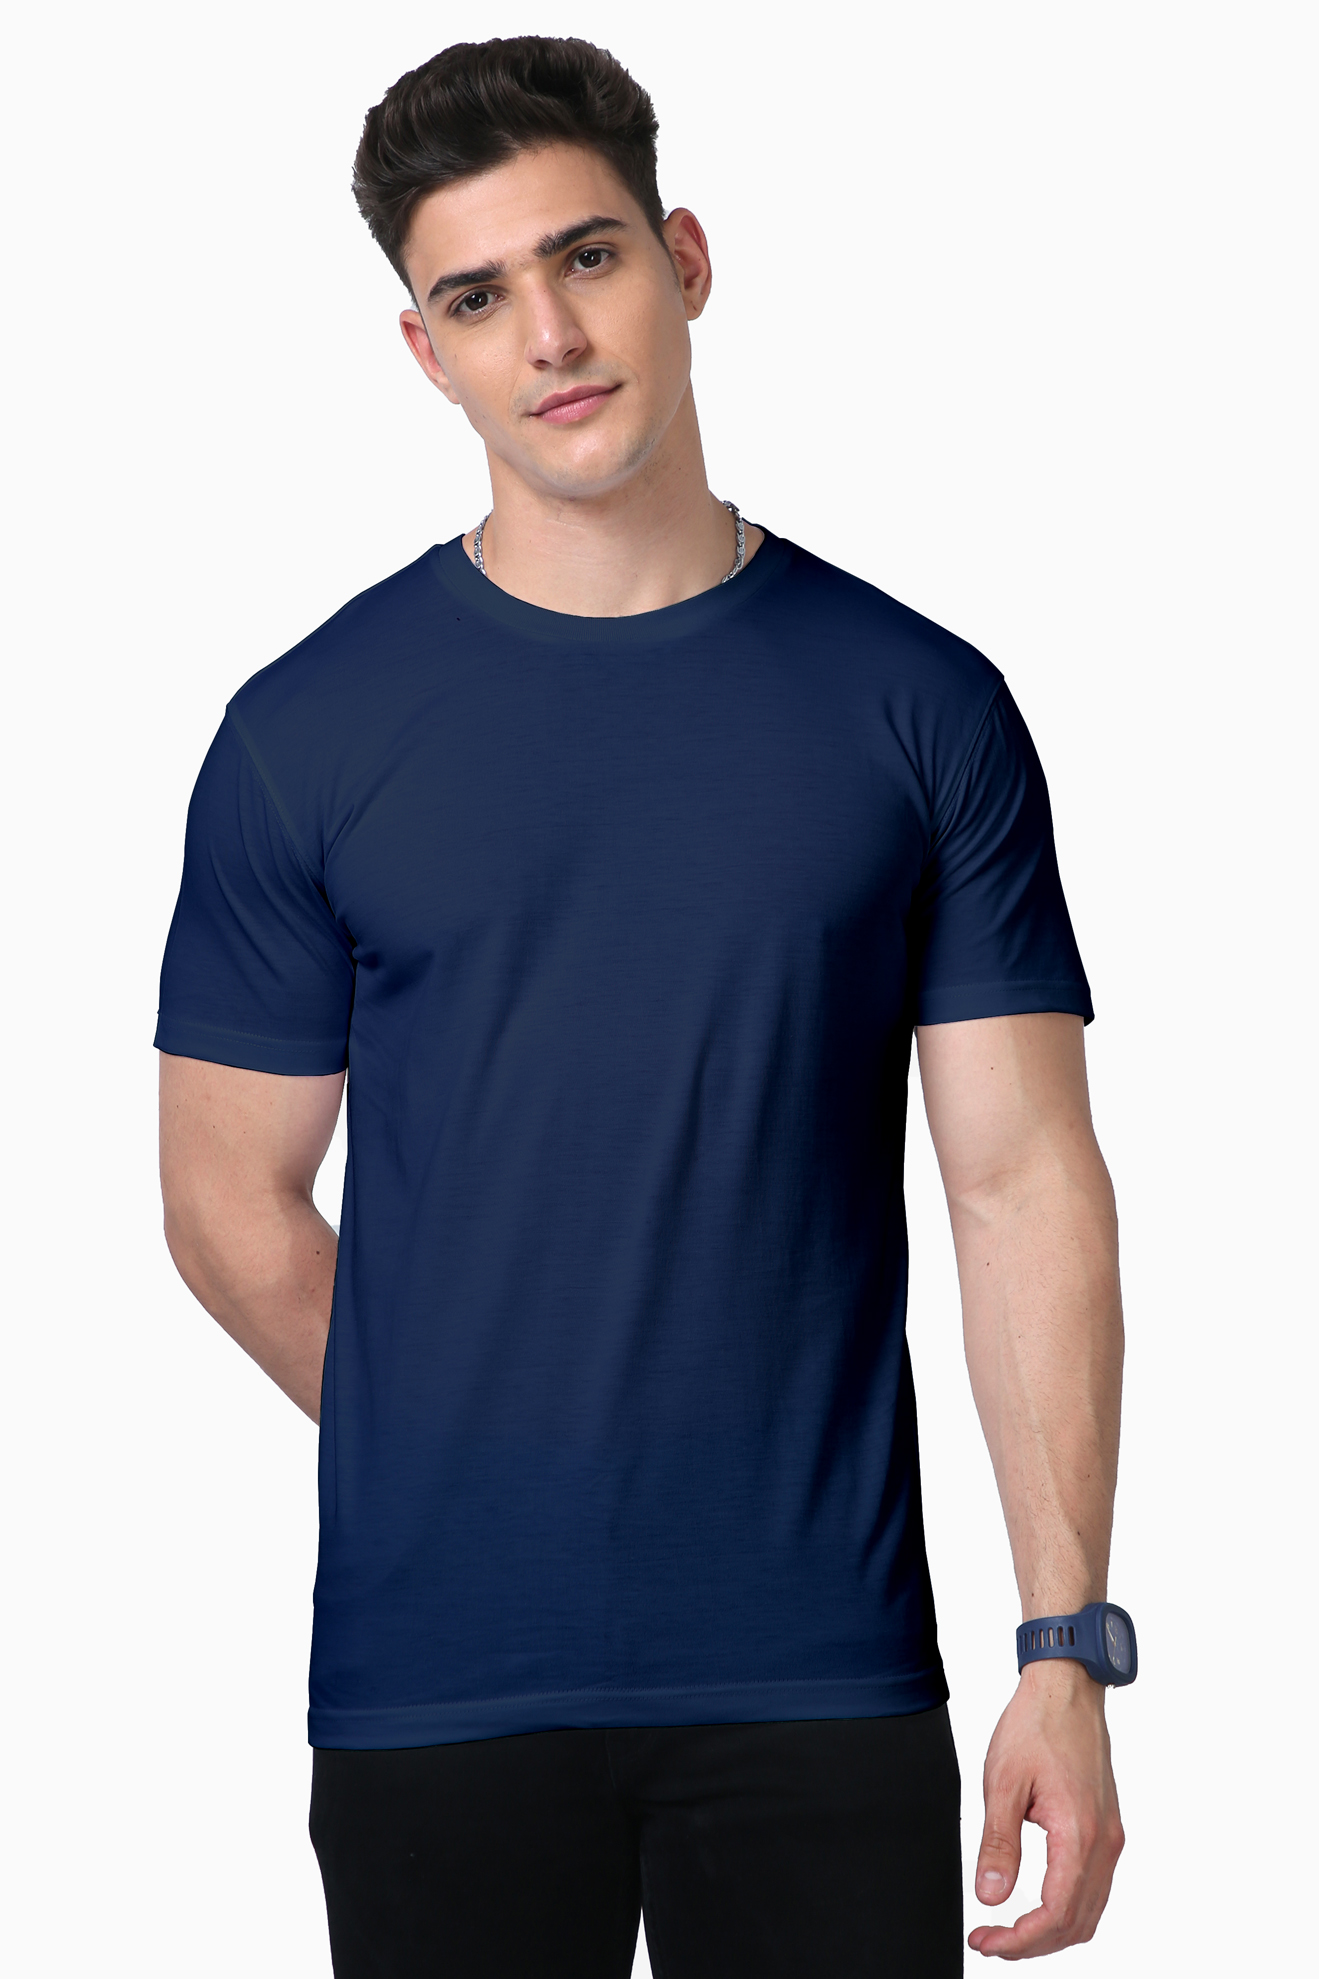 Downpour Men's Supima Cotton Plain T-Shirt